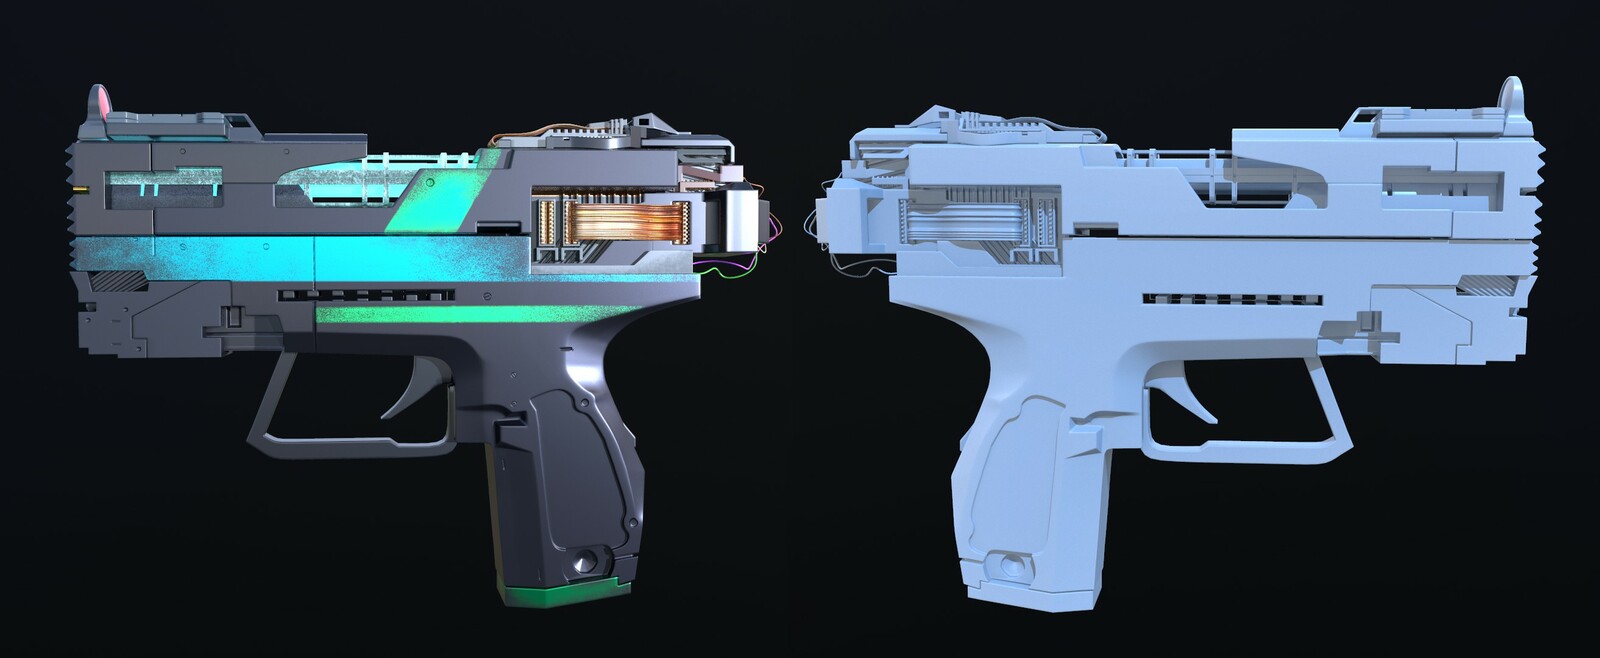 Cyberpunk weapon 3d model фото 111